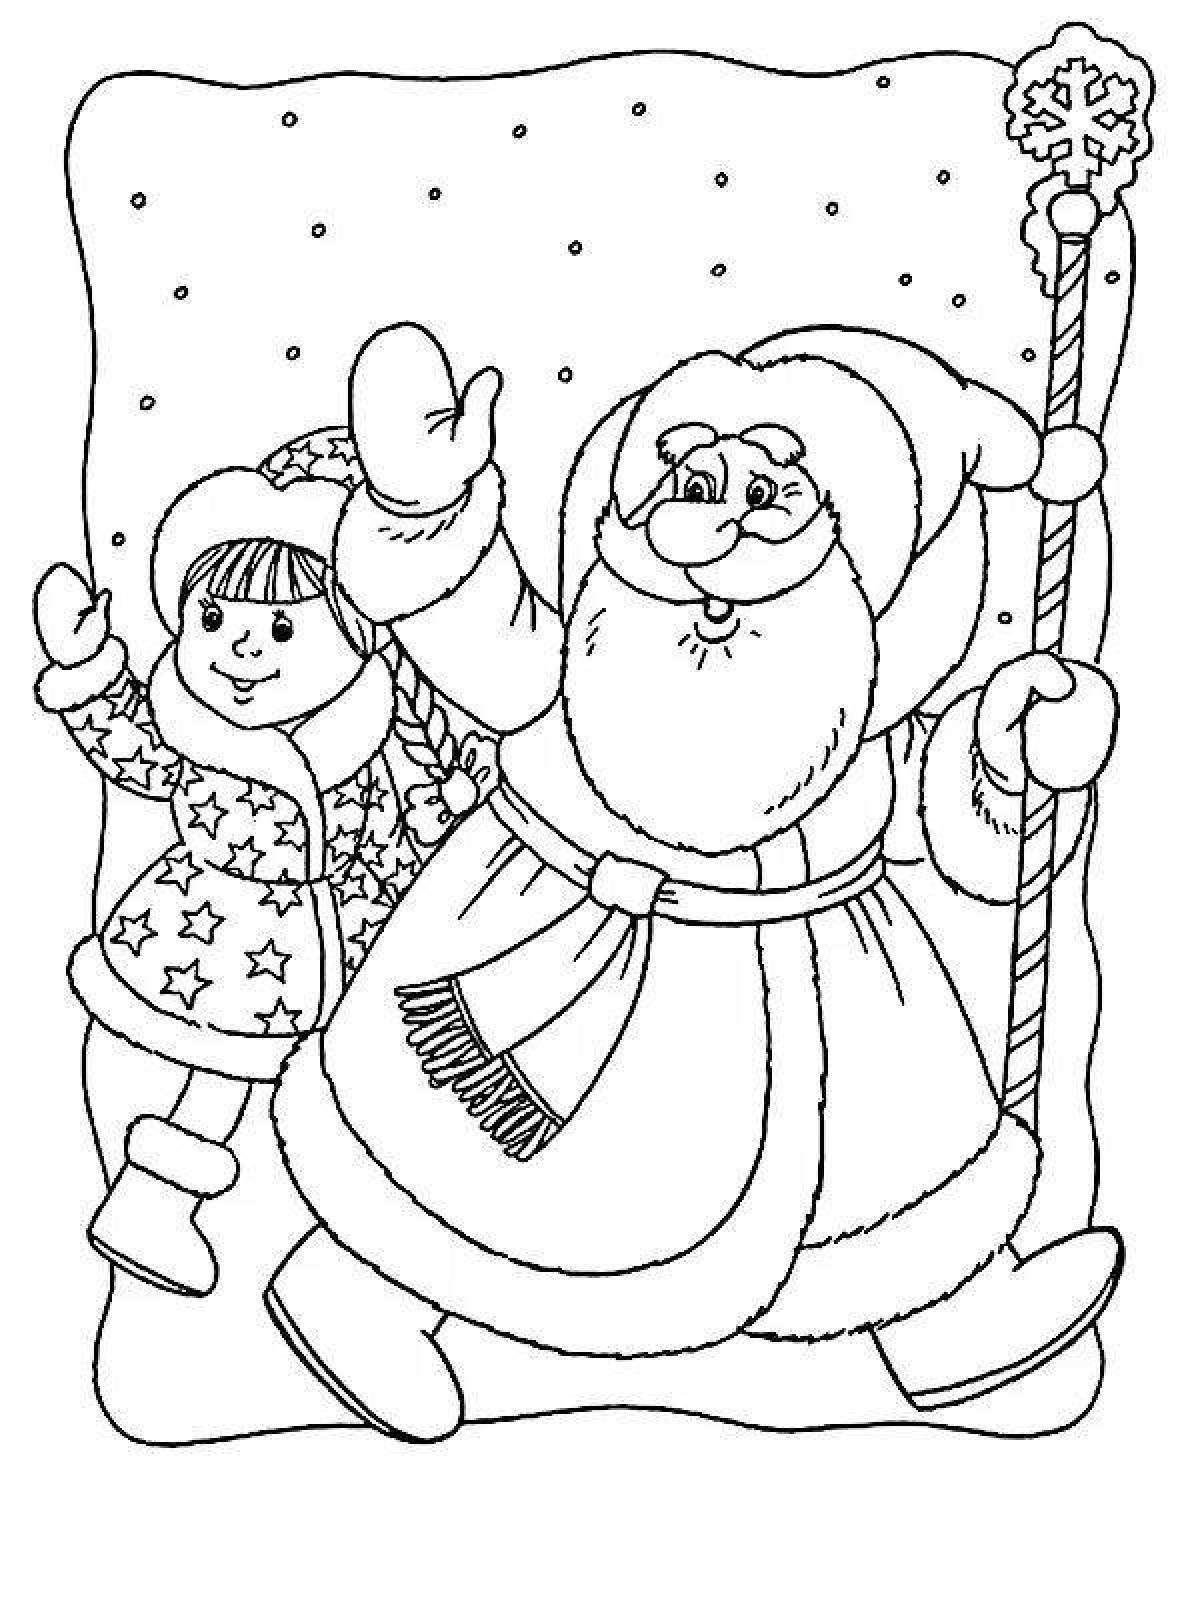 Santa claus coloring page